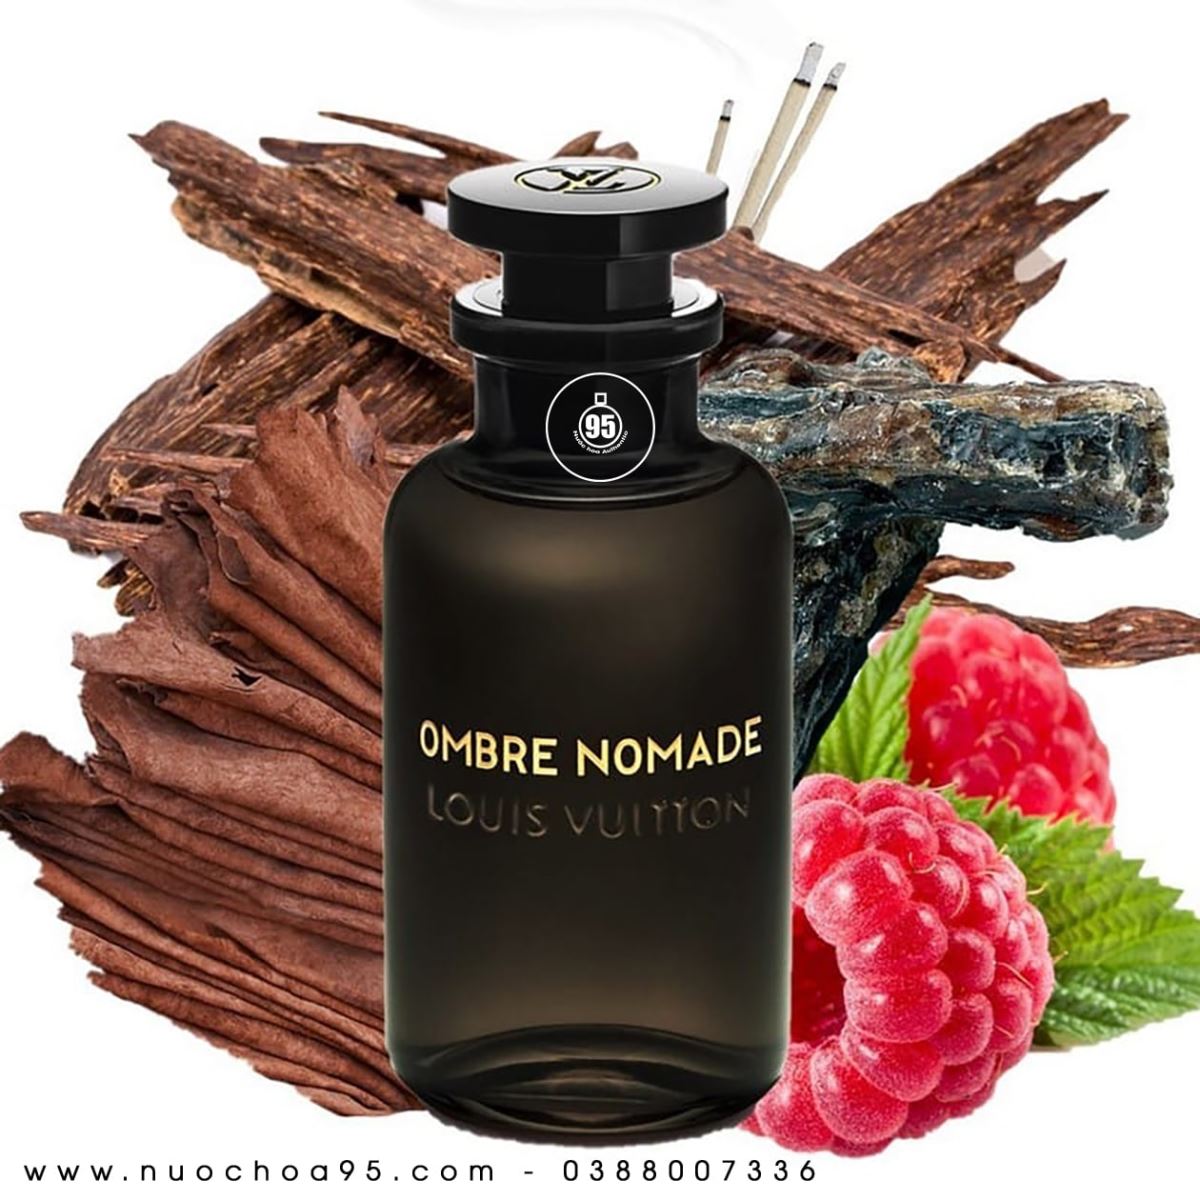 Nước hoa Louis Vuitton Ombre Nomade - Ảnh 1